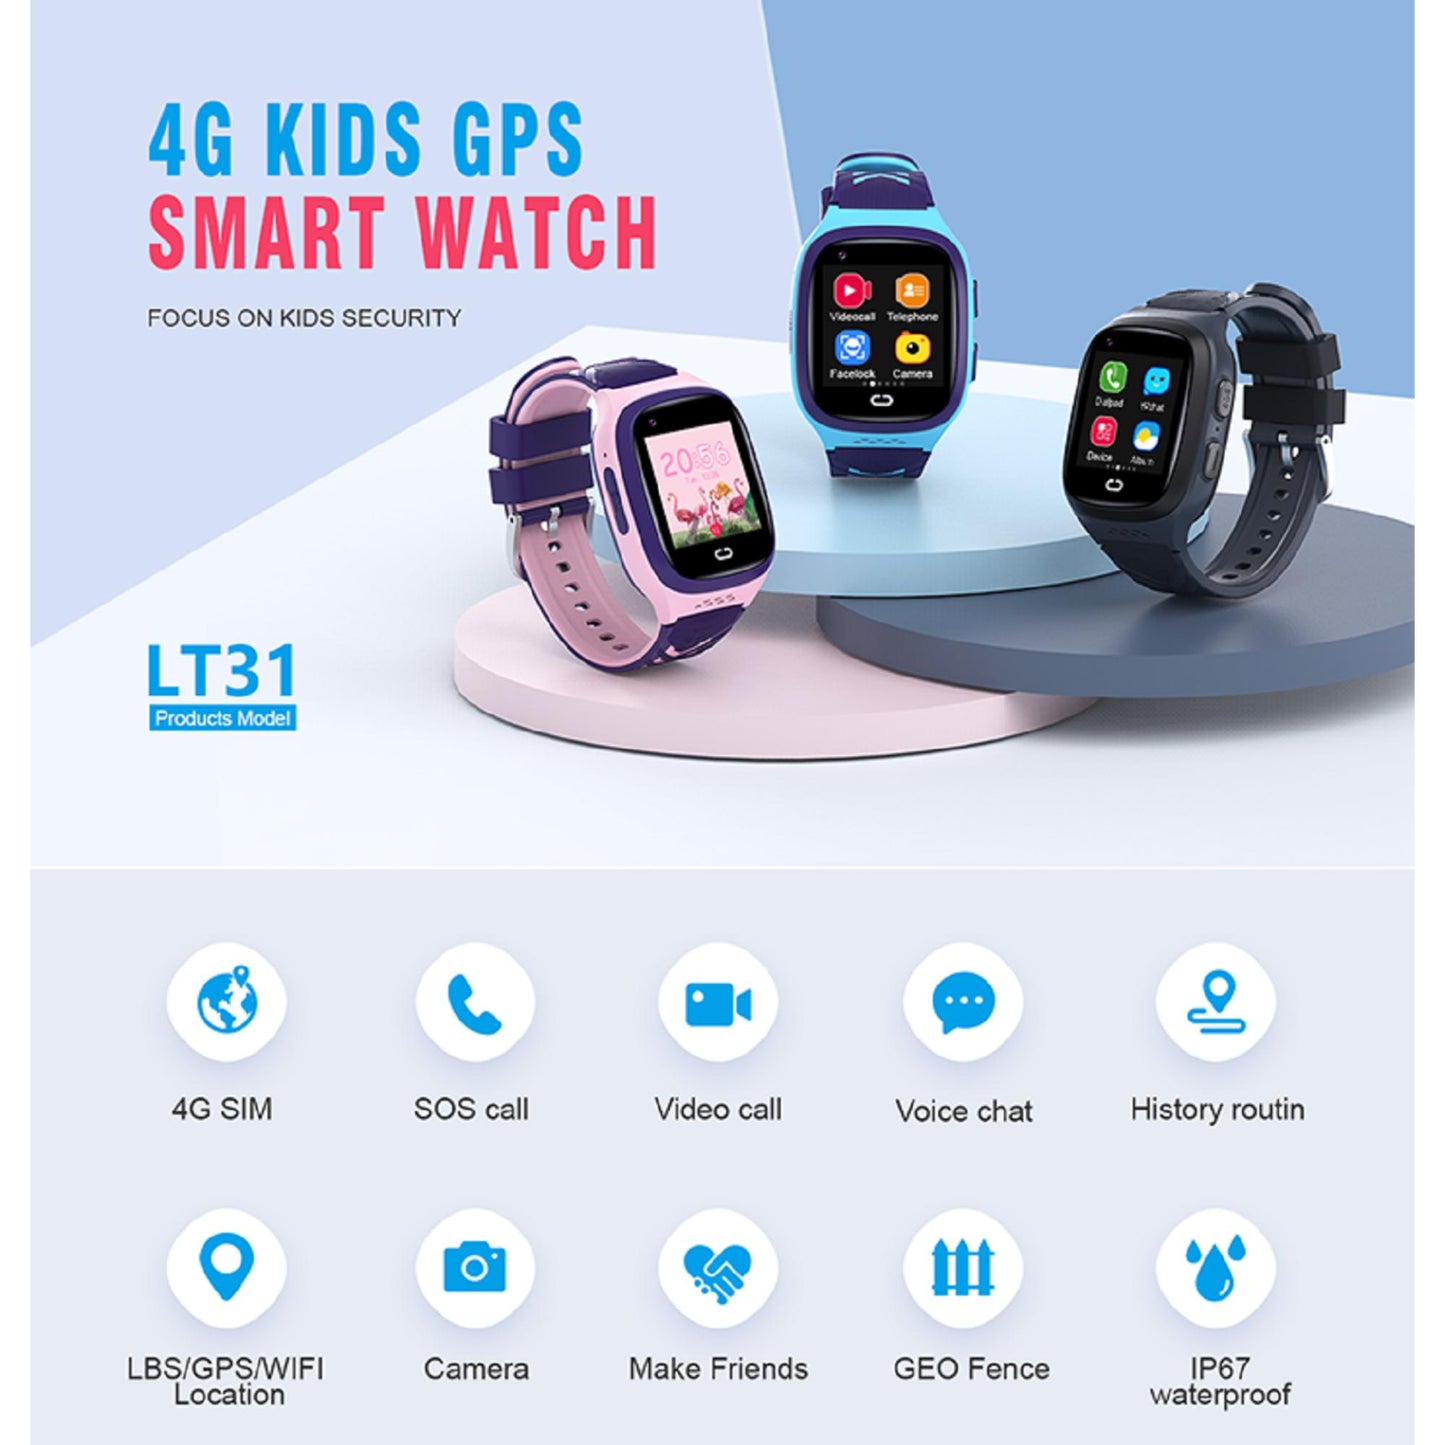 Karen M LT31 Kinder-Smartwatch - 4G-Konnektivität, GPS-Tracker, SOS-Funktion, Video- und Sprachnachrichten, 1,4-Zoll-Display. | Blue Chilli Electronics.